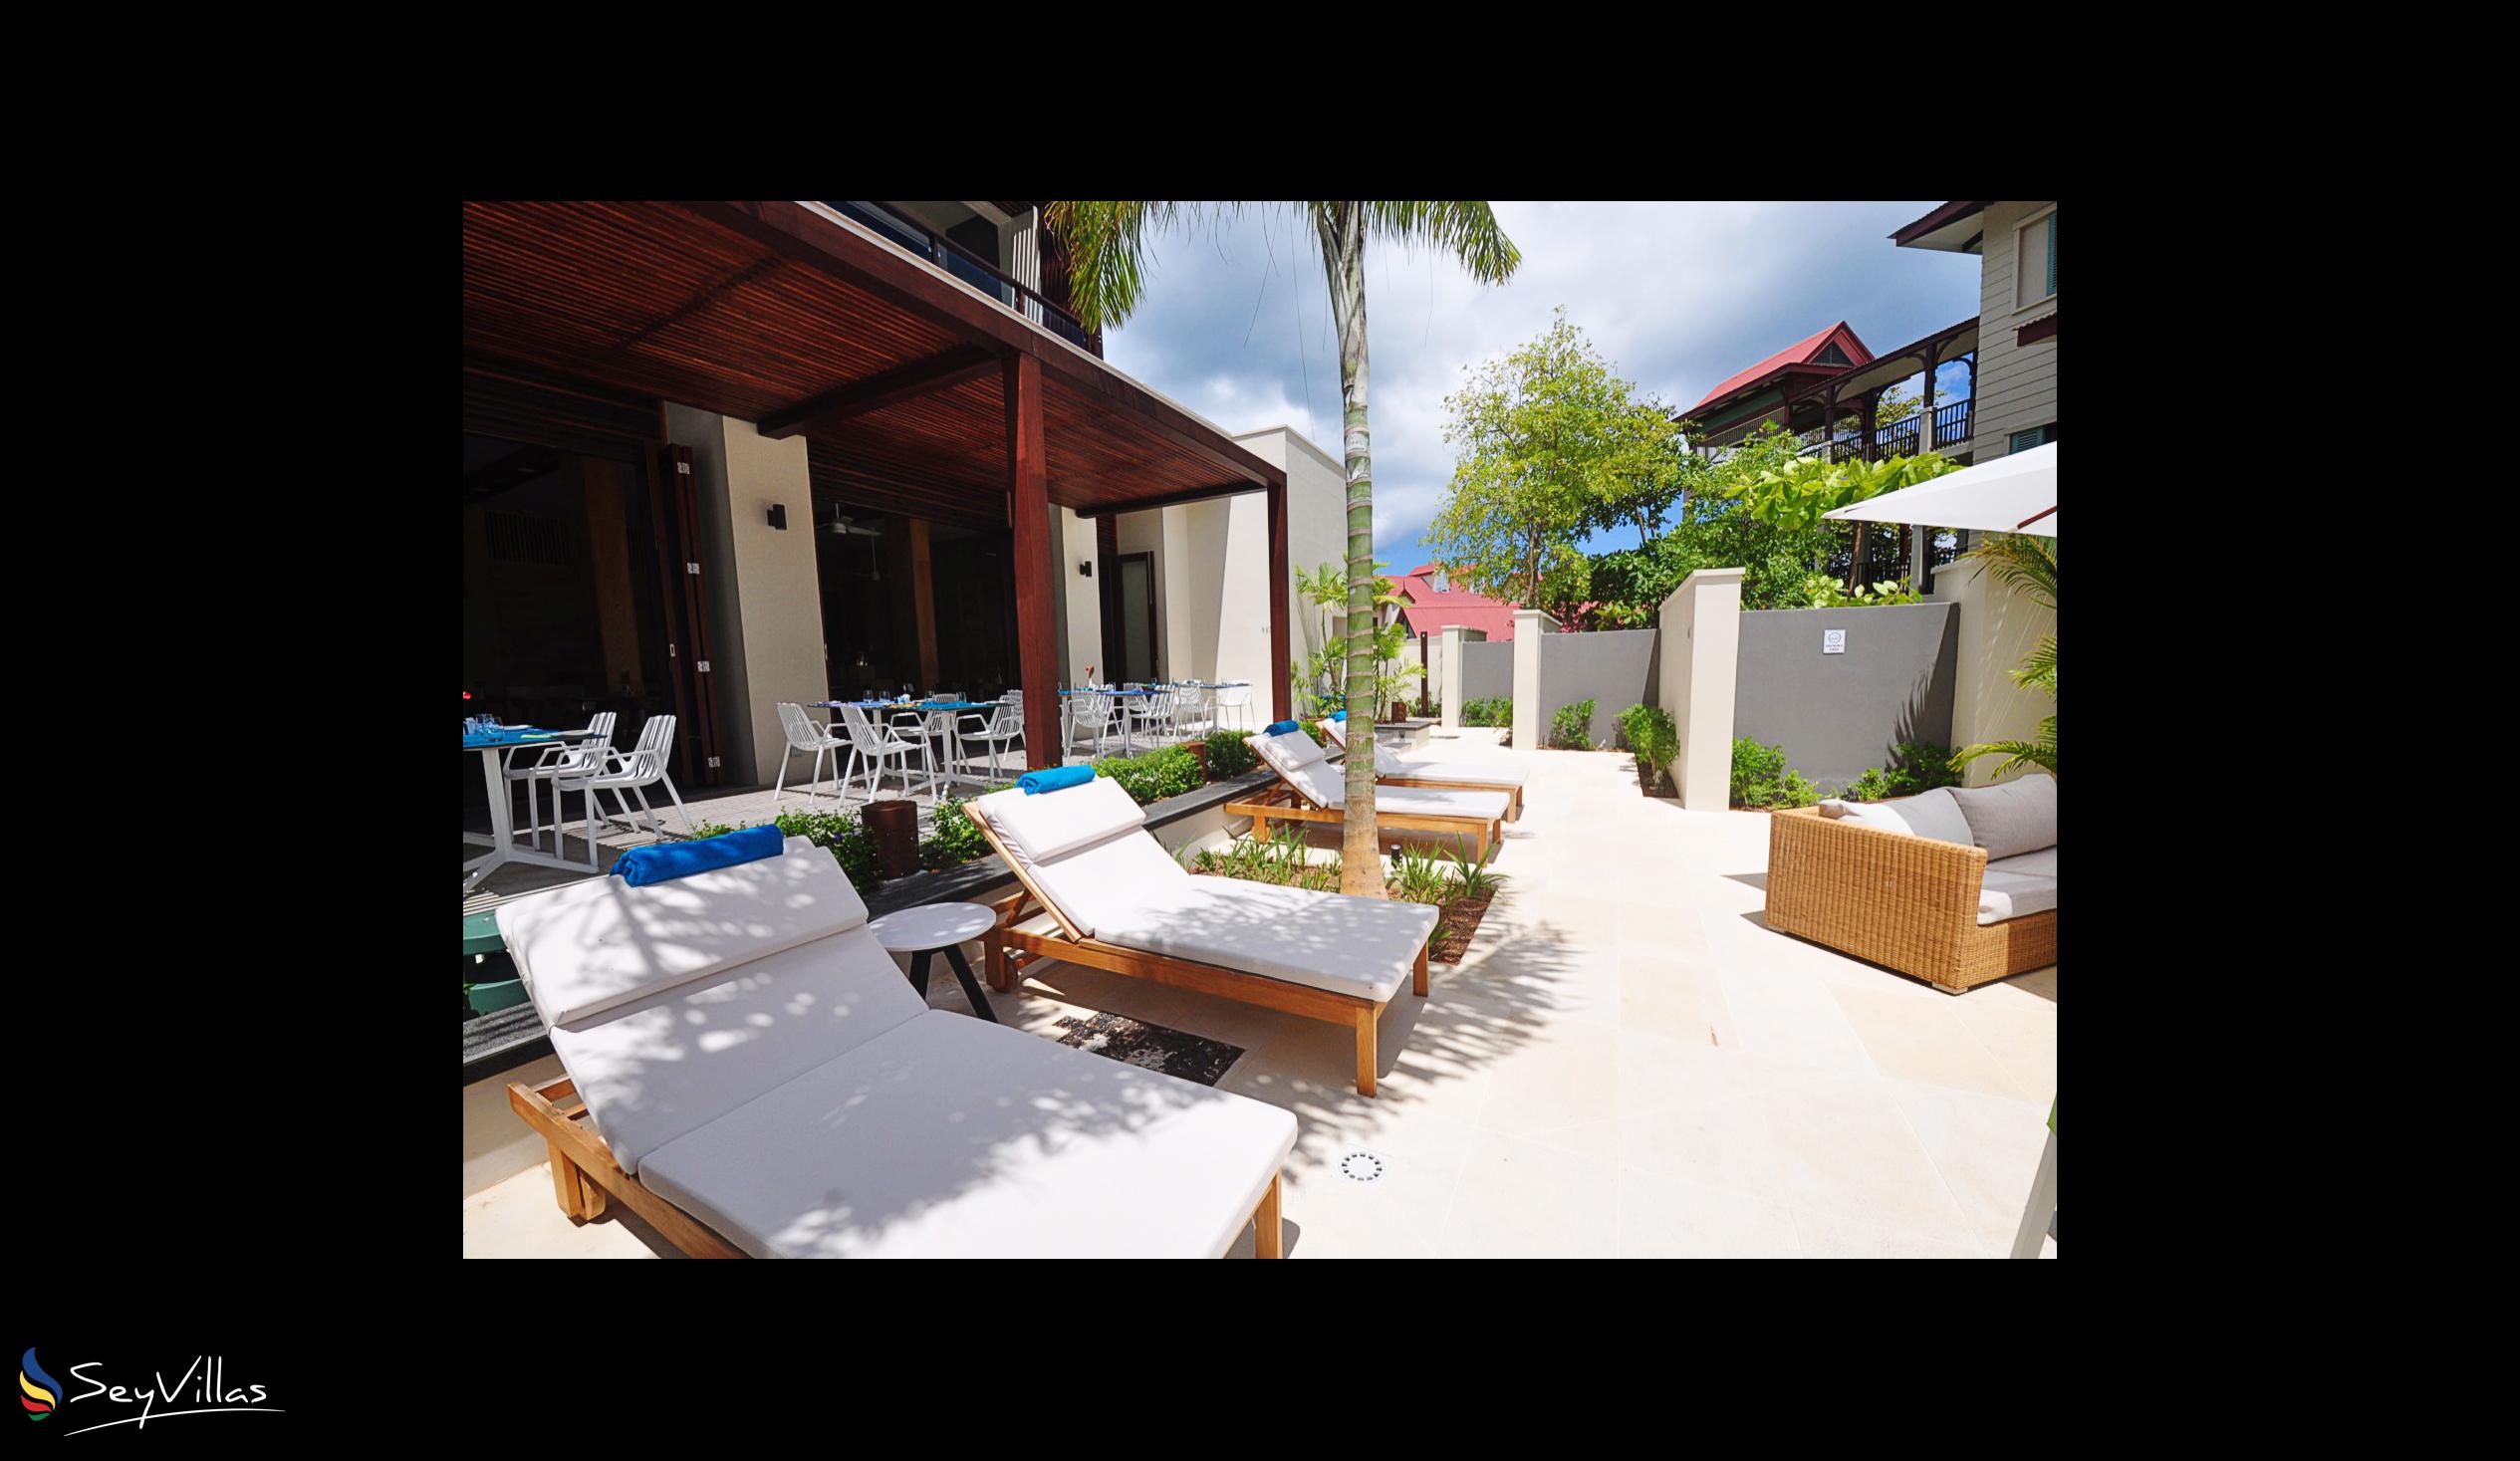 Photo 11: Eden Bleu Hotel - Outdoor area - Mahé (Seychelles)